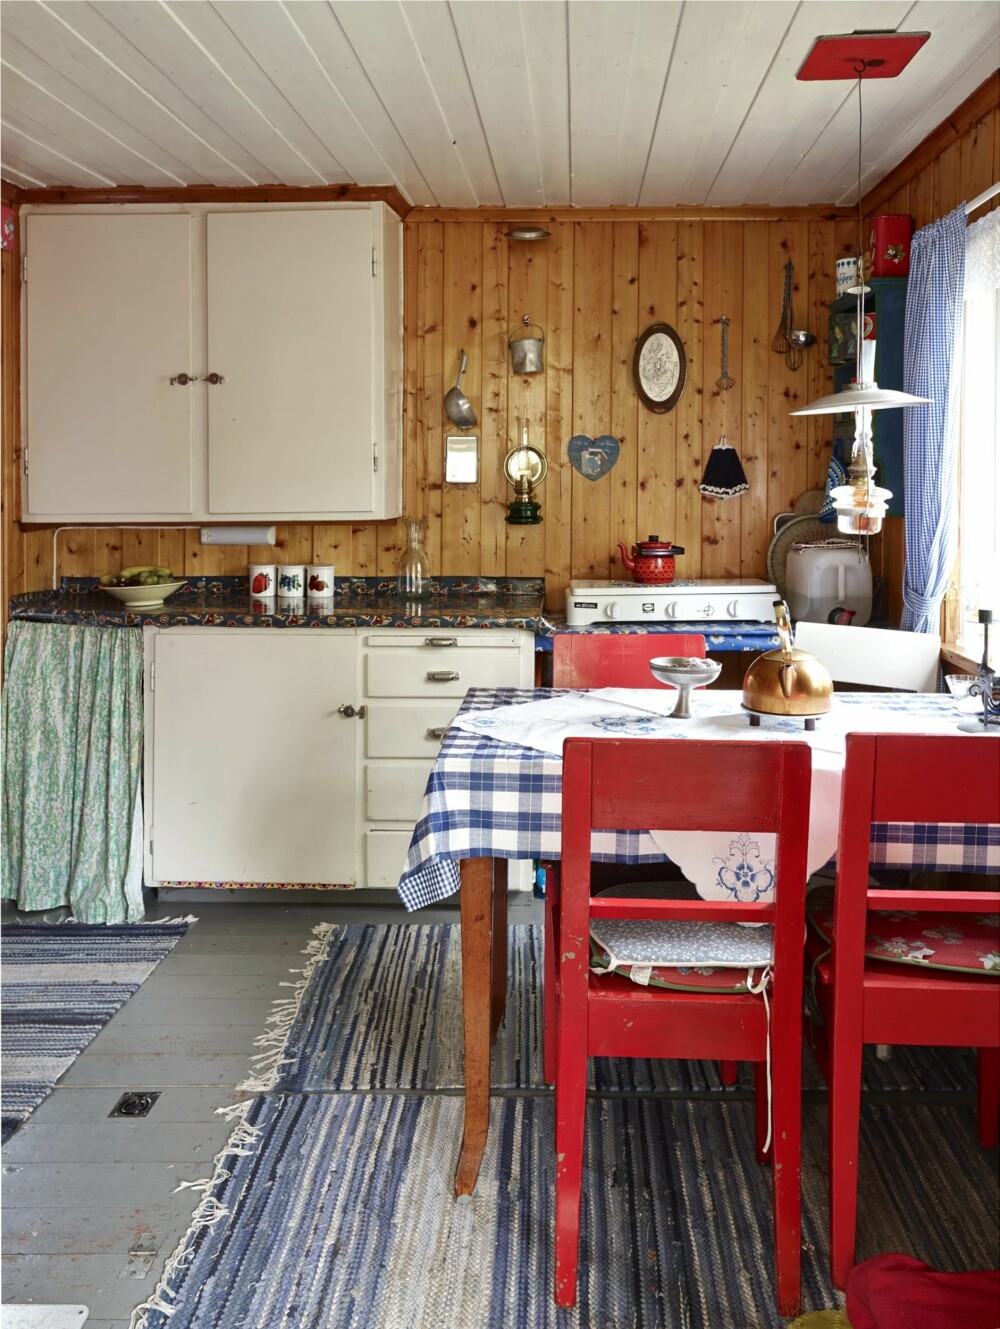 Originalt kjøkken: Kjøkkenet, som er i den nyeste delen av hytta, er ikke blitt rørt siden det ble satt opp på 1950-tallet.